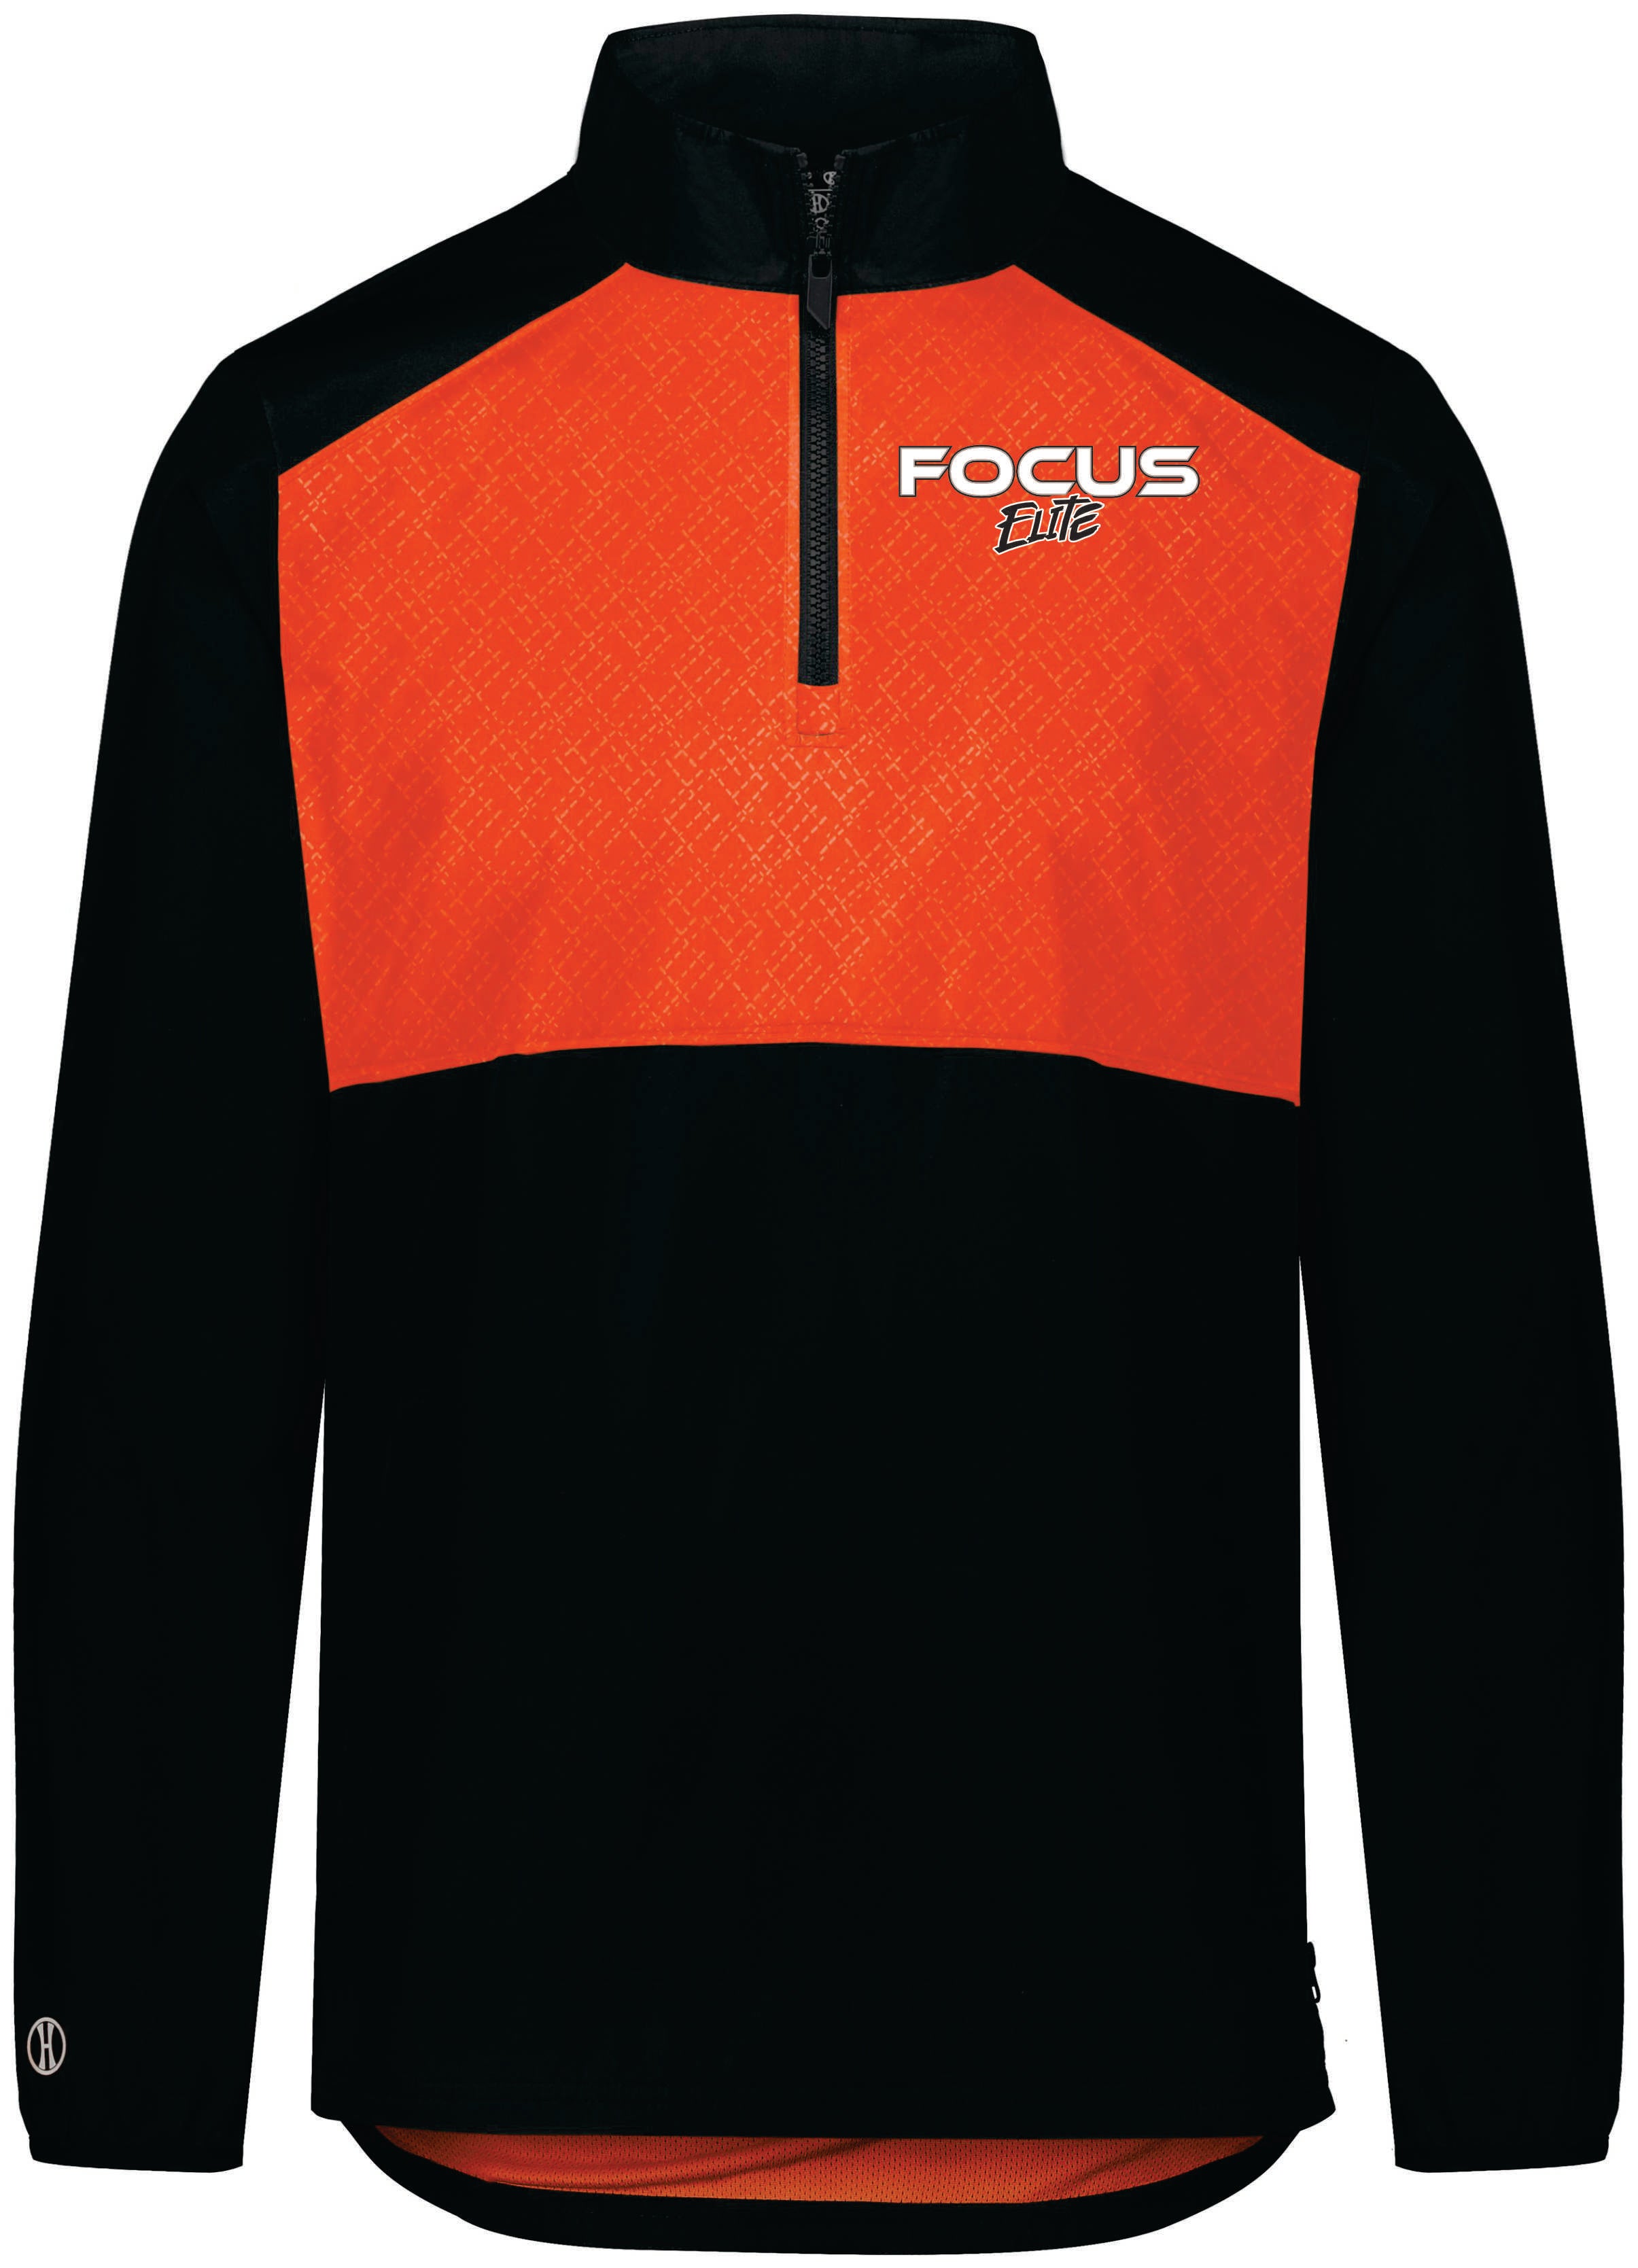 Focus 1/4 zip Wind Breaker jacket